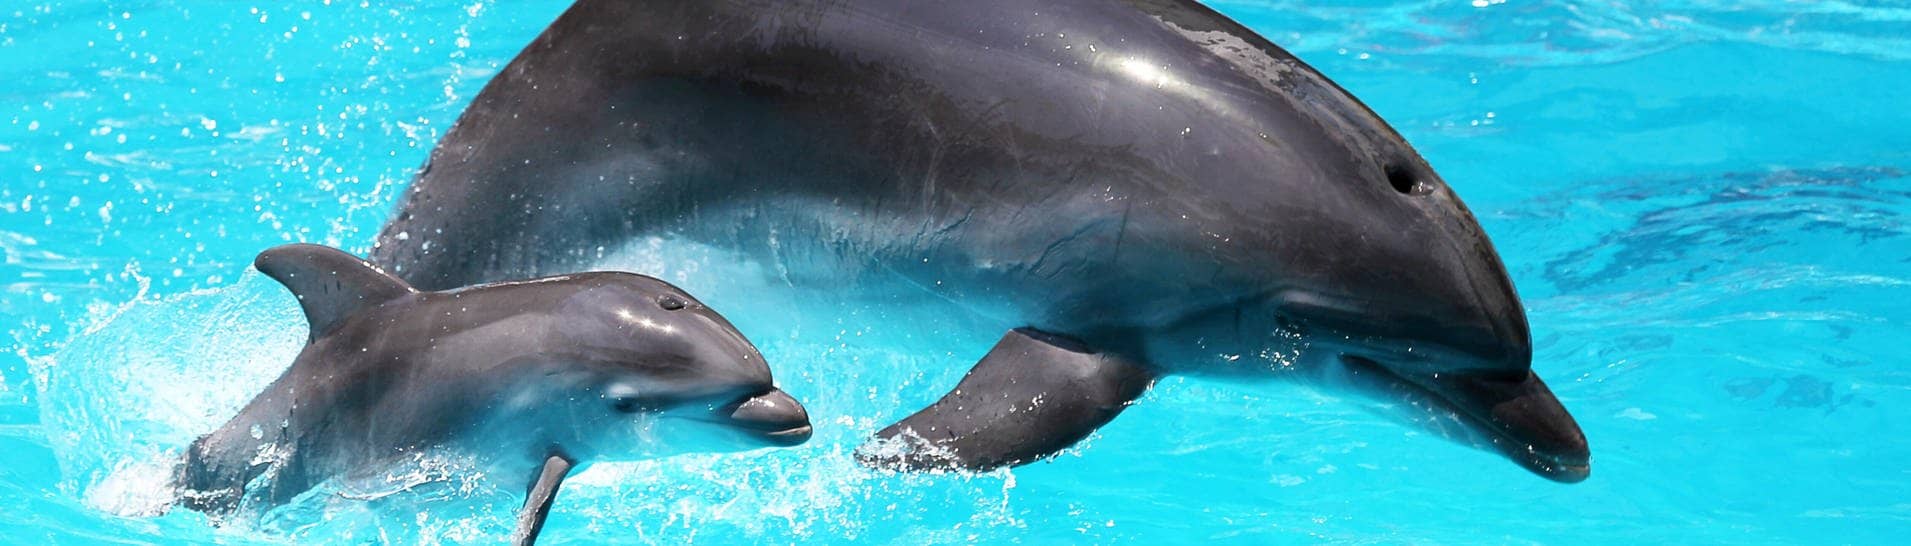 Eine Delfin-Mutter mit ihrem Jungen im Wasser. Delfine nutzen offenbar genau wie Menschen Babysprache, um mit ihren Kleinen zu kommunizieren. 